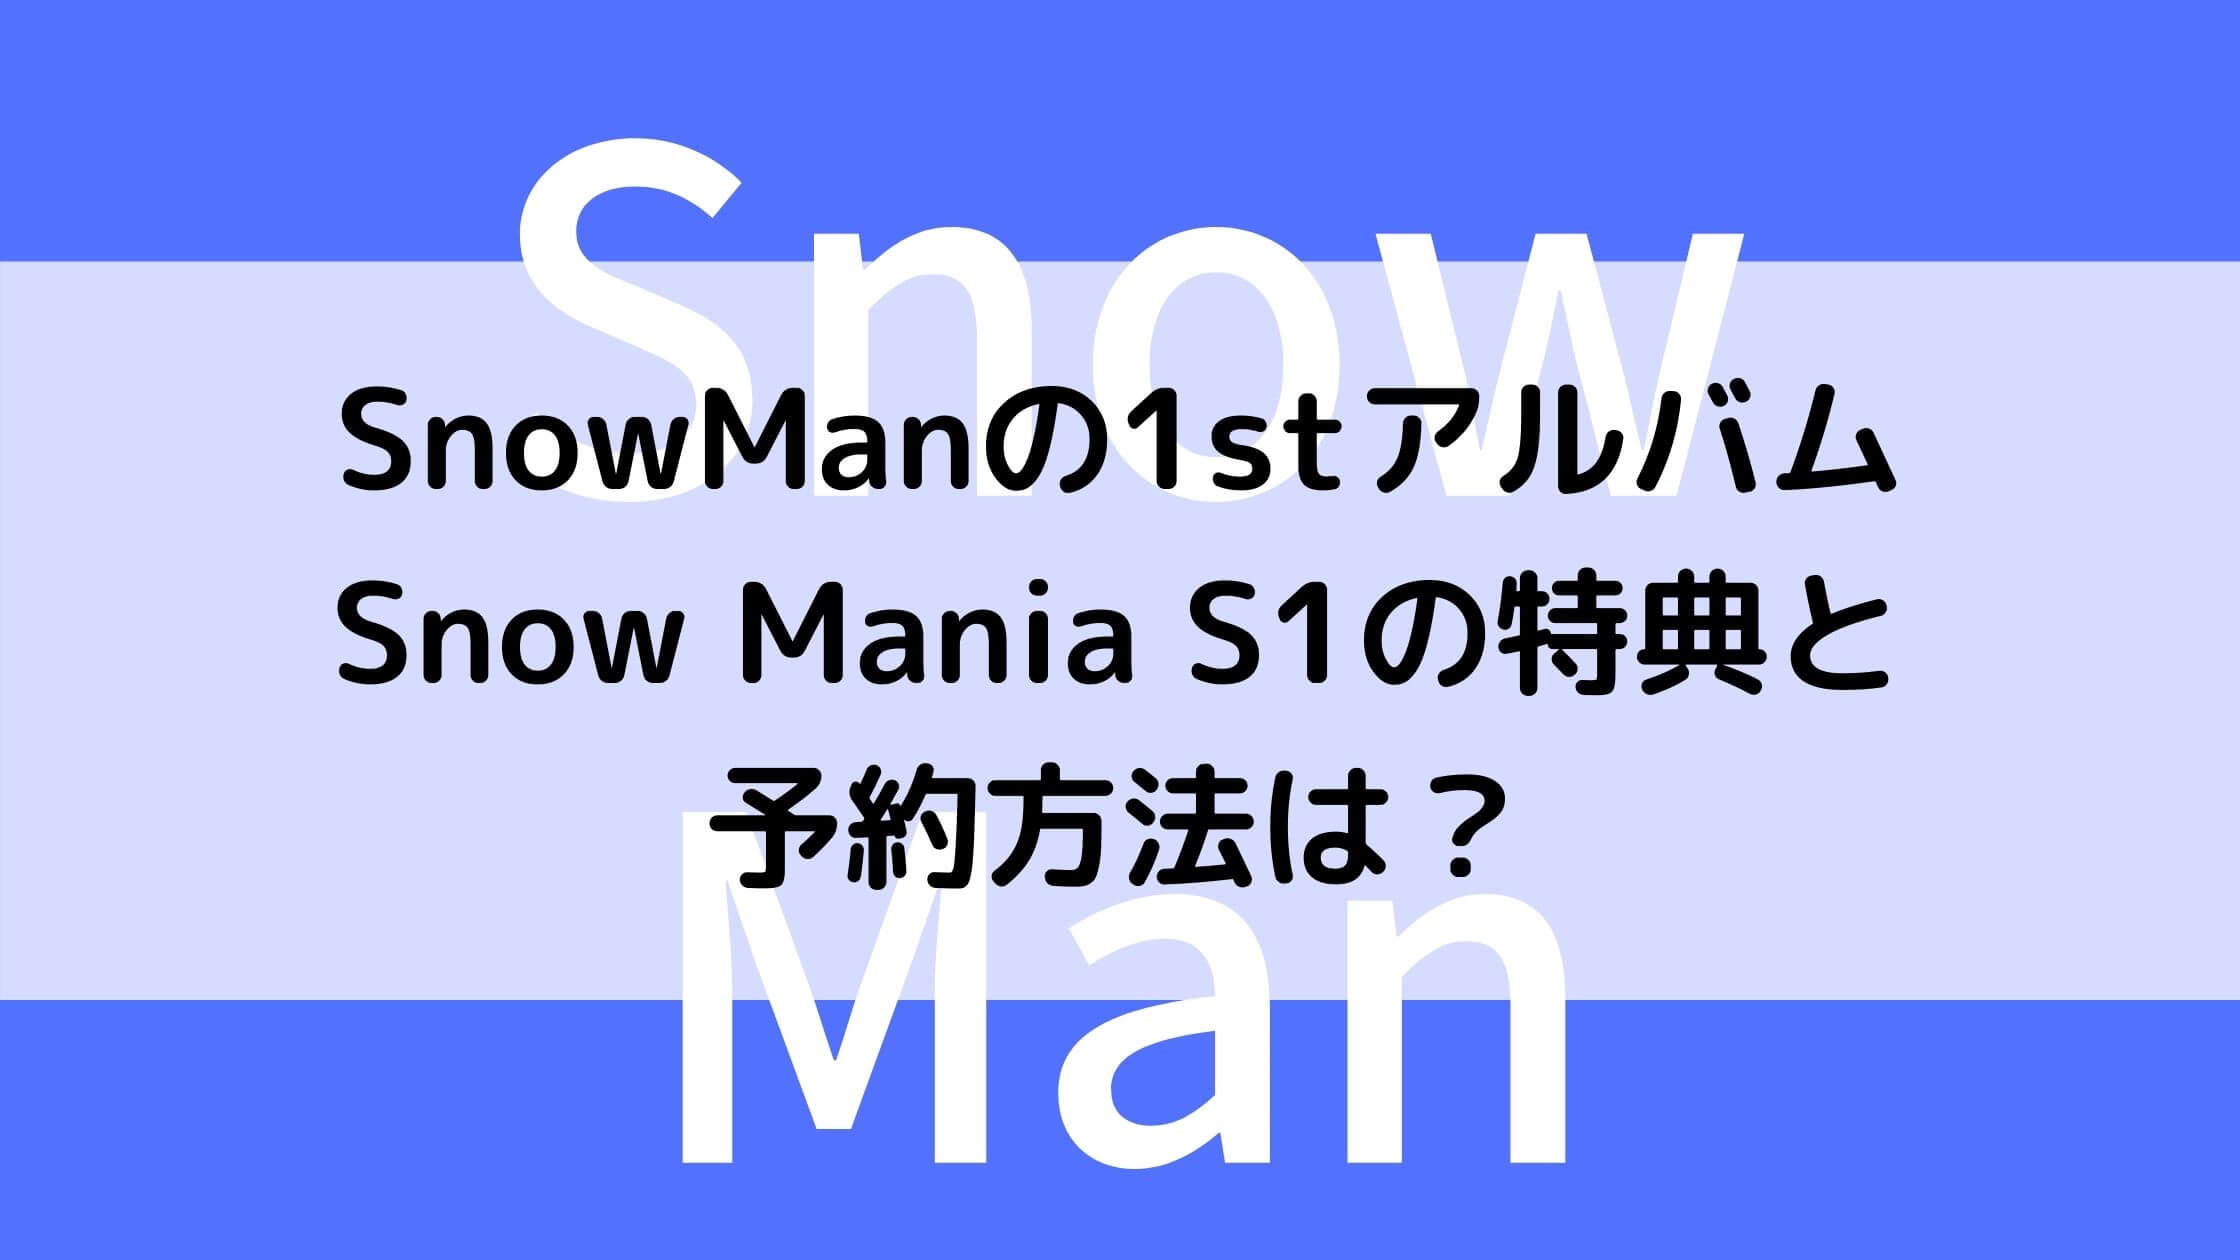 SnowManの1stアルバムSnow Mania S1の特典と予約方法は？ | あんブログ